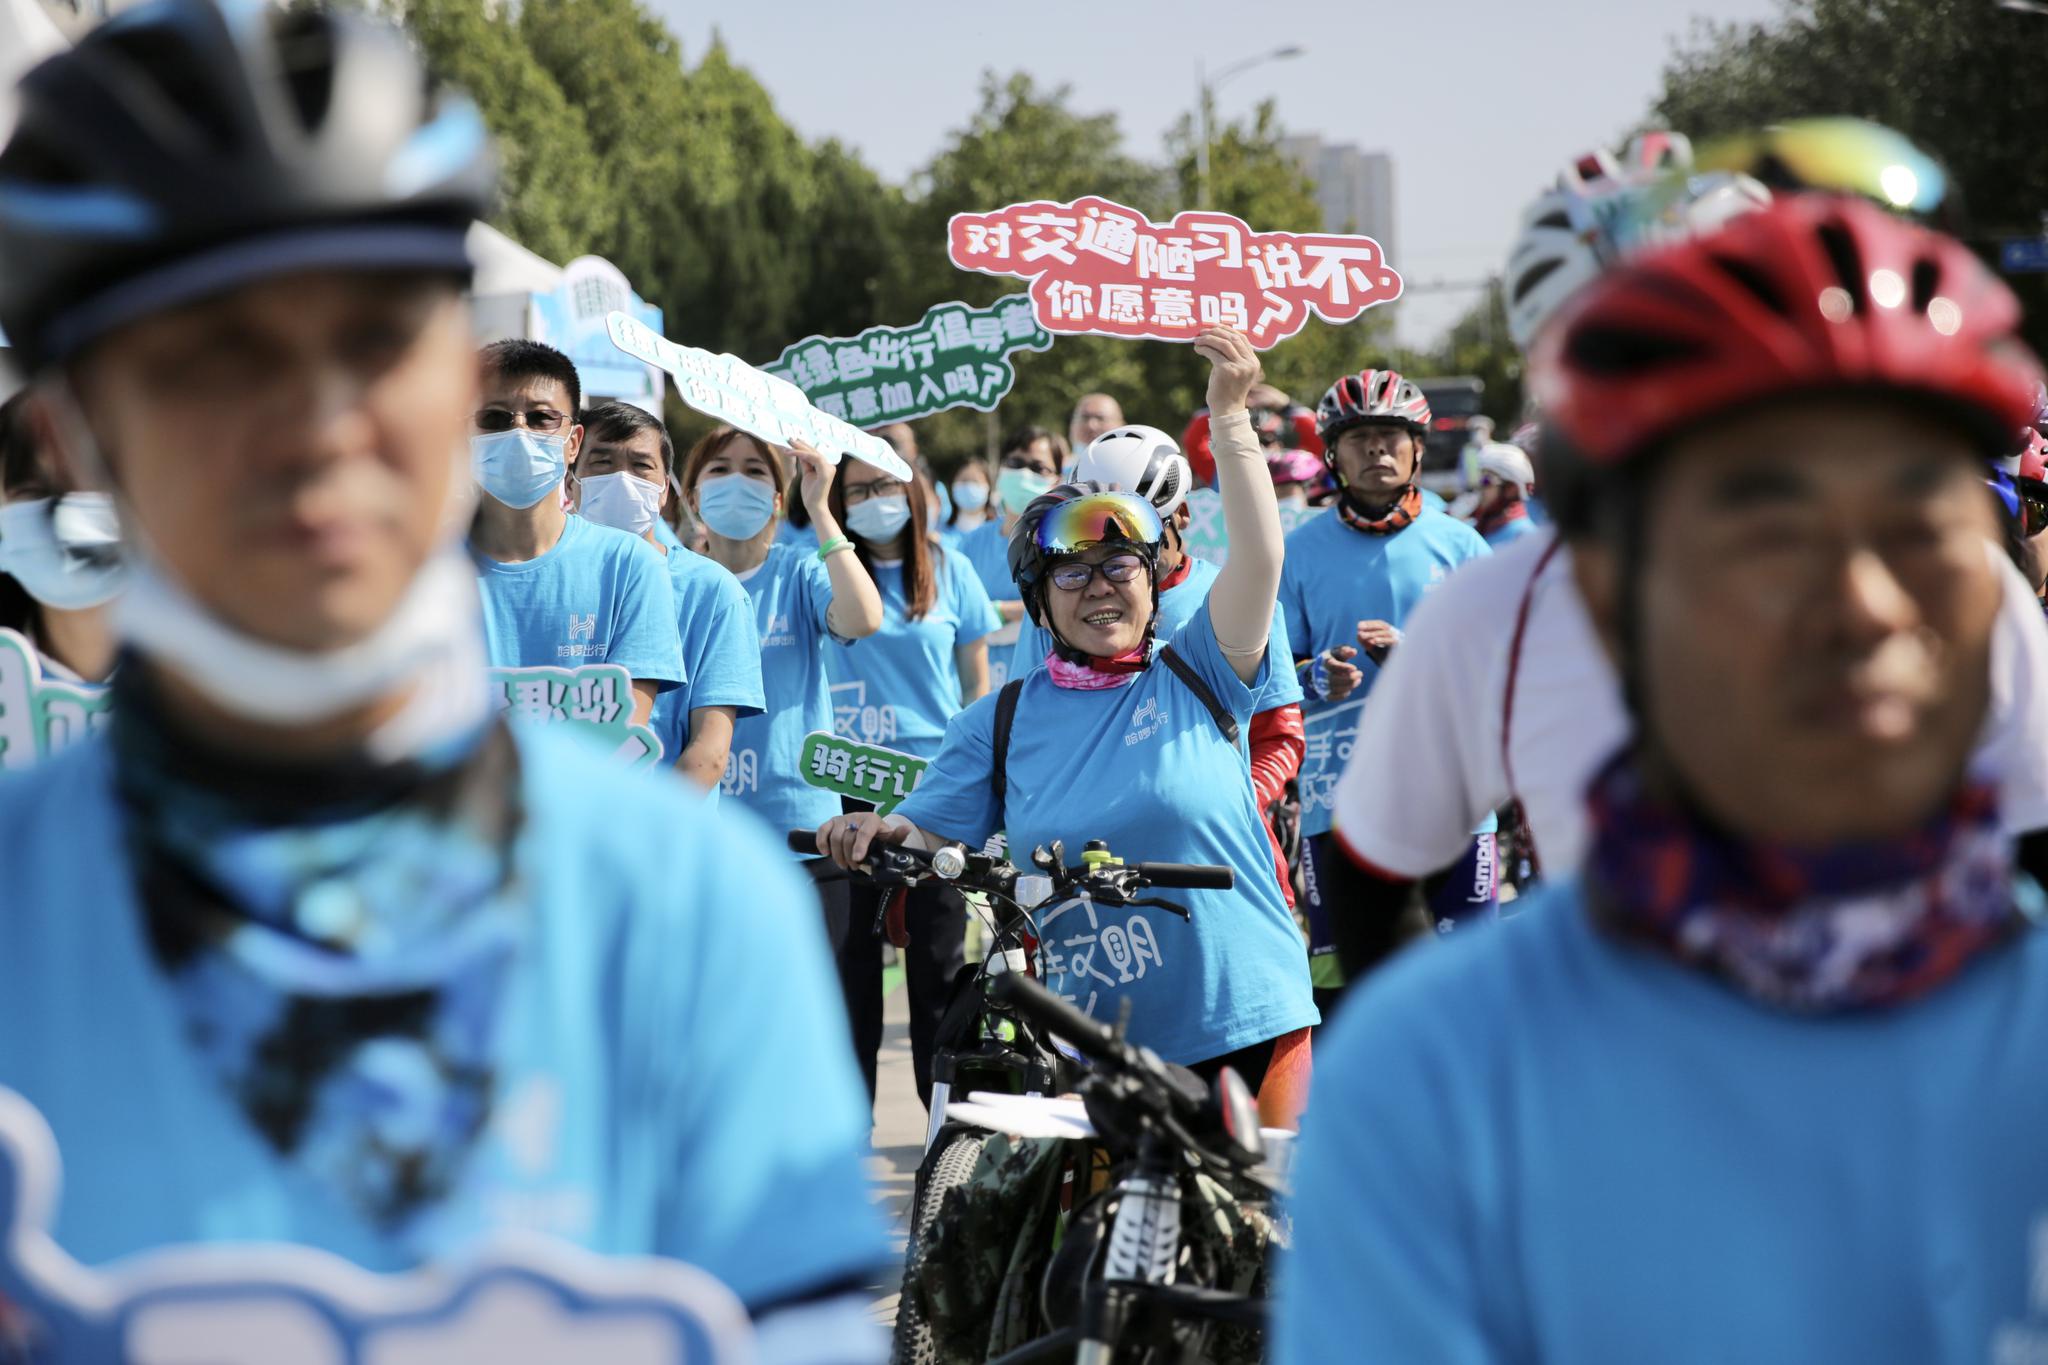 参加活动的骑行爱好者手举绿色出行标语。新京报记者 郑新洽 摄